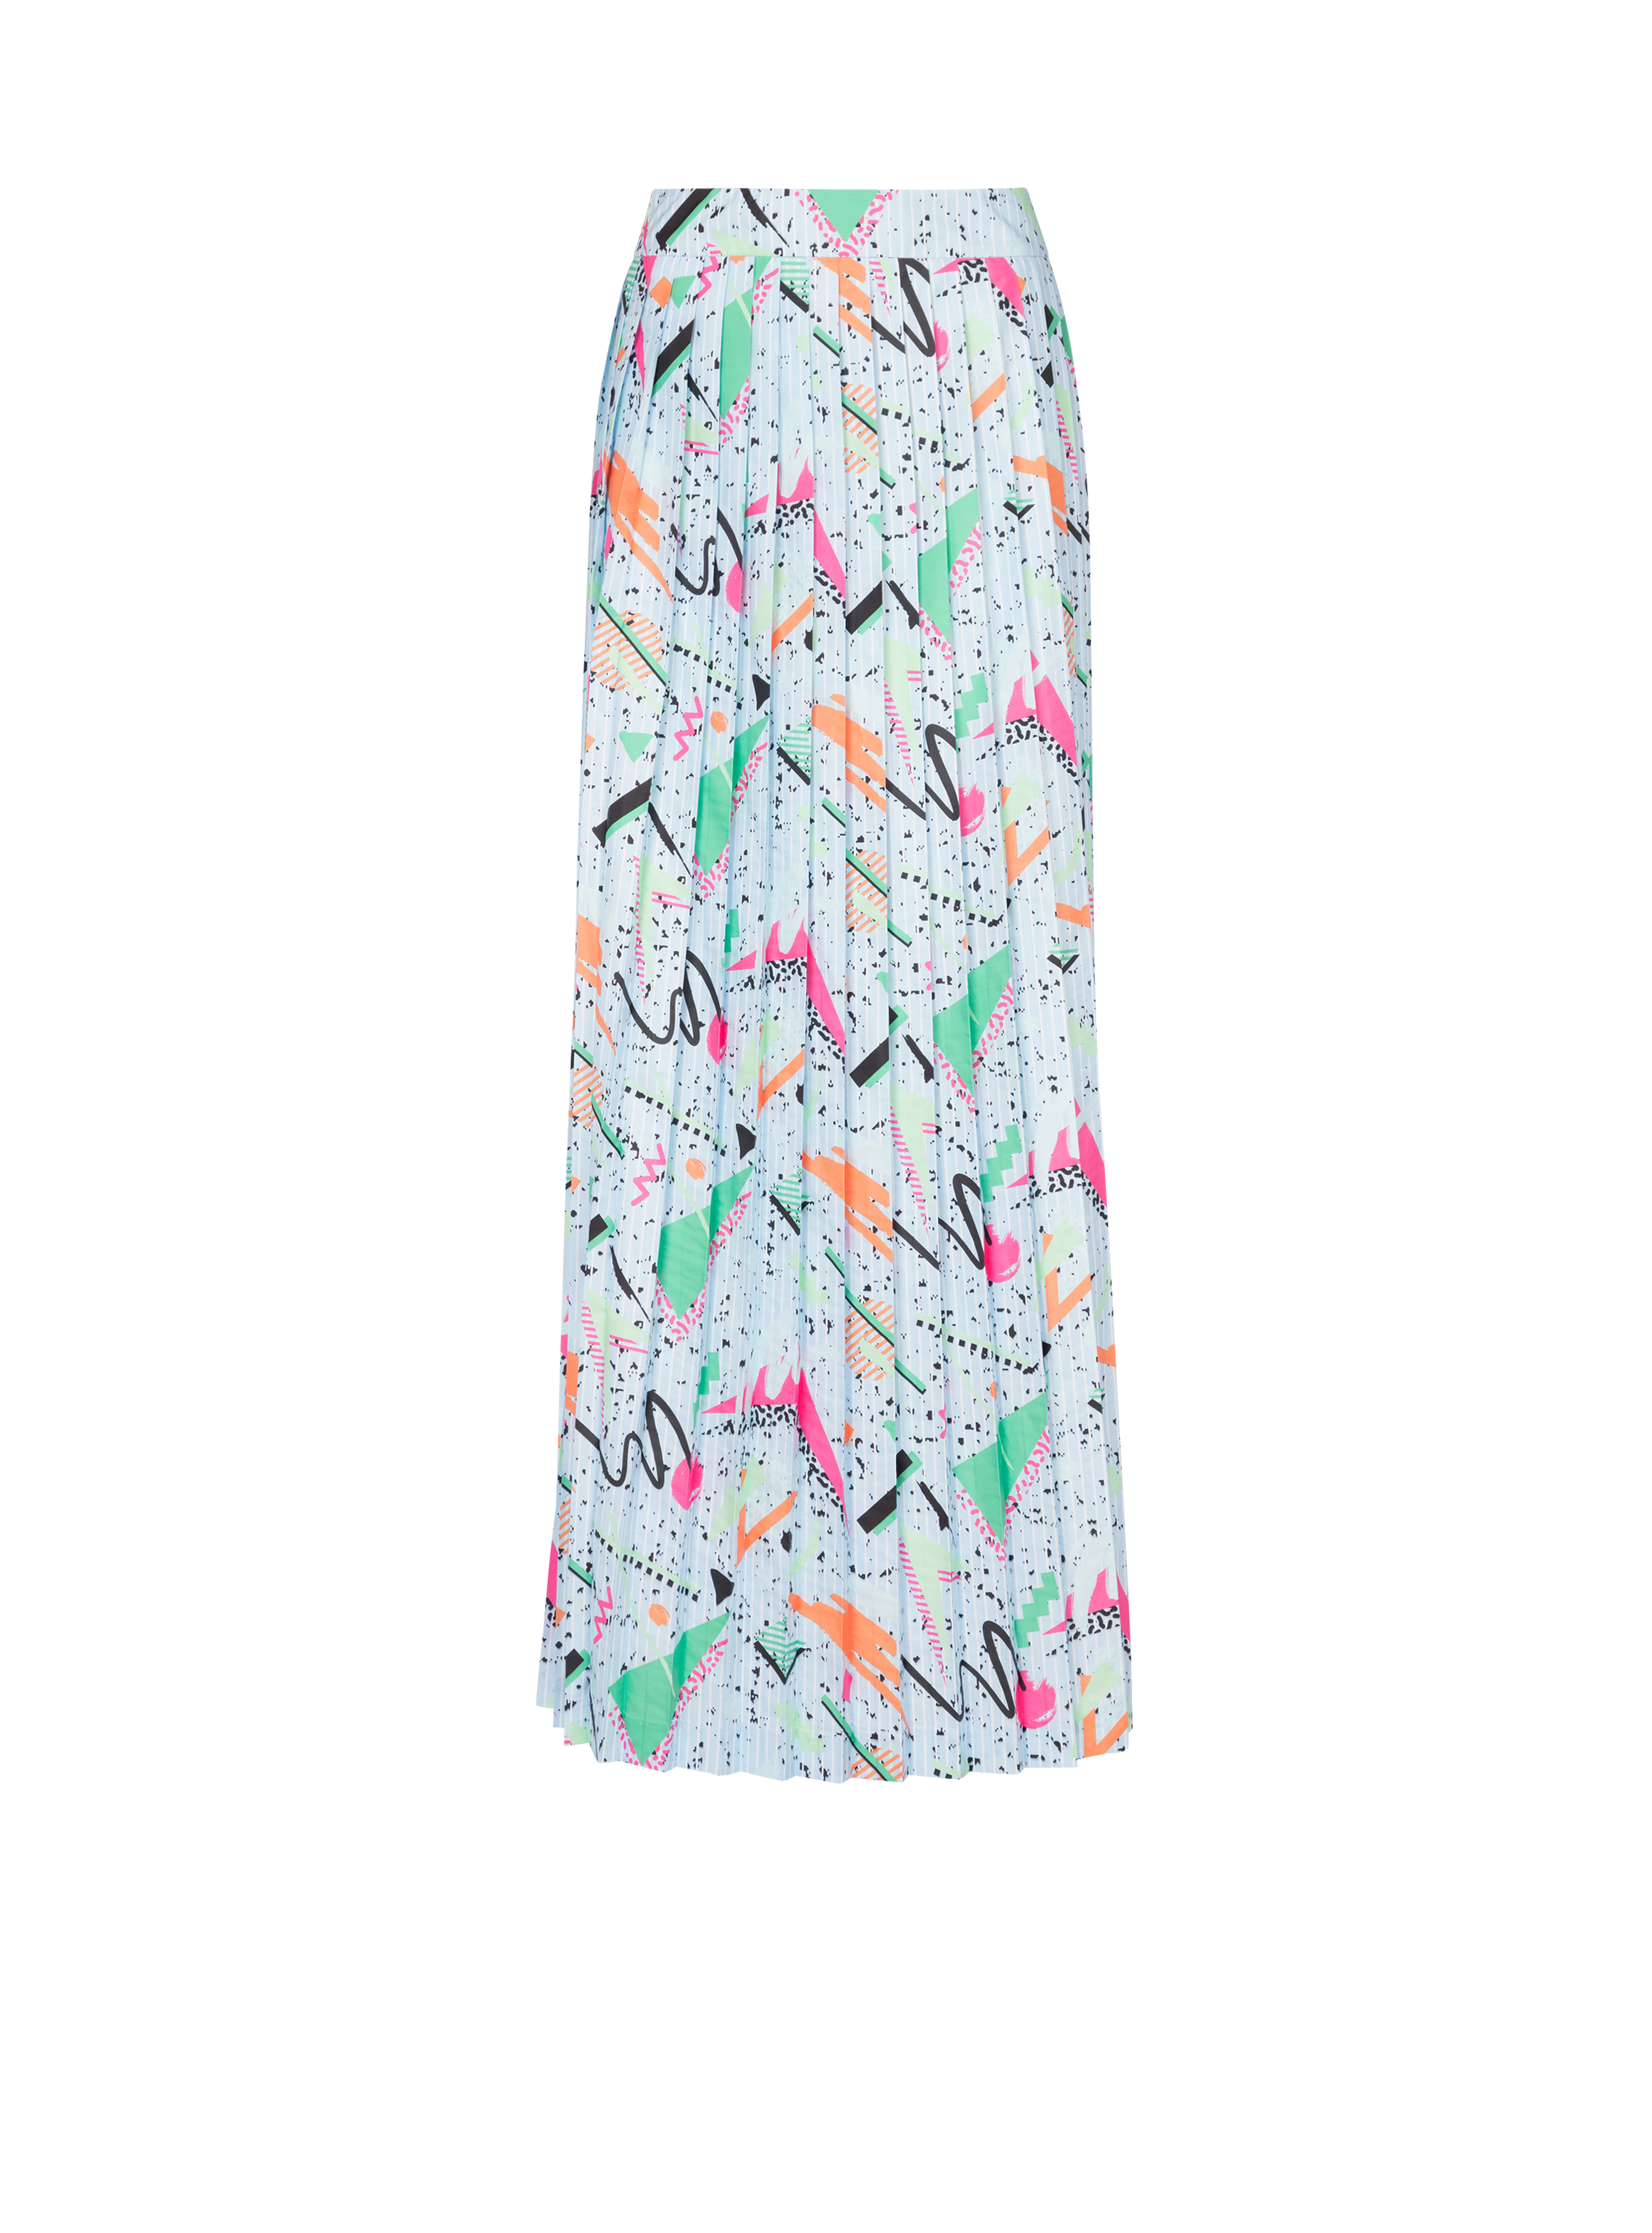 Balmain x Stranger Things - Pleated print skirt, multicolor